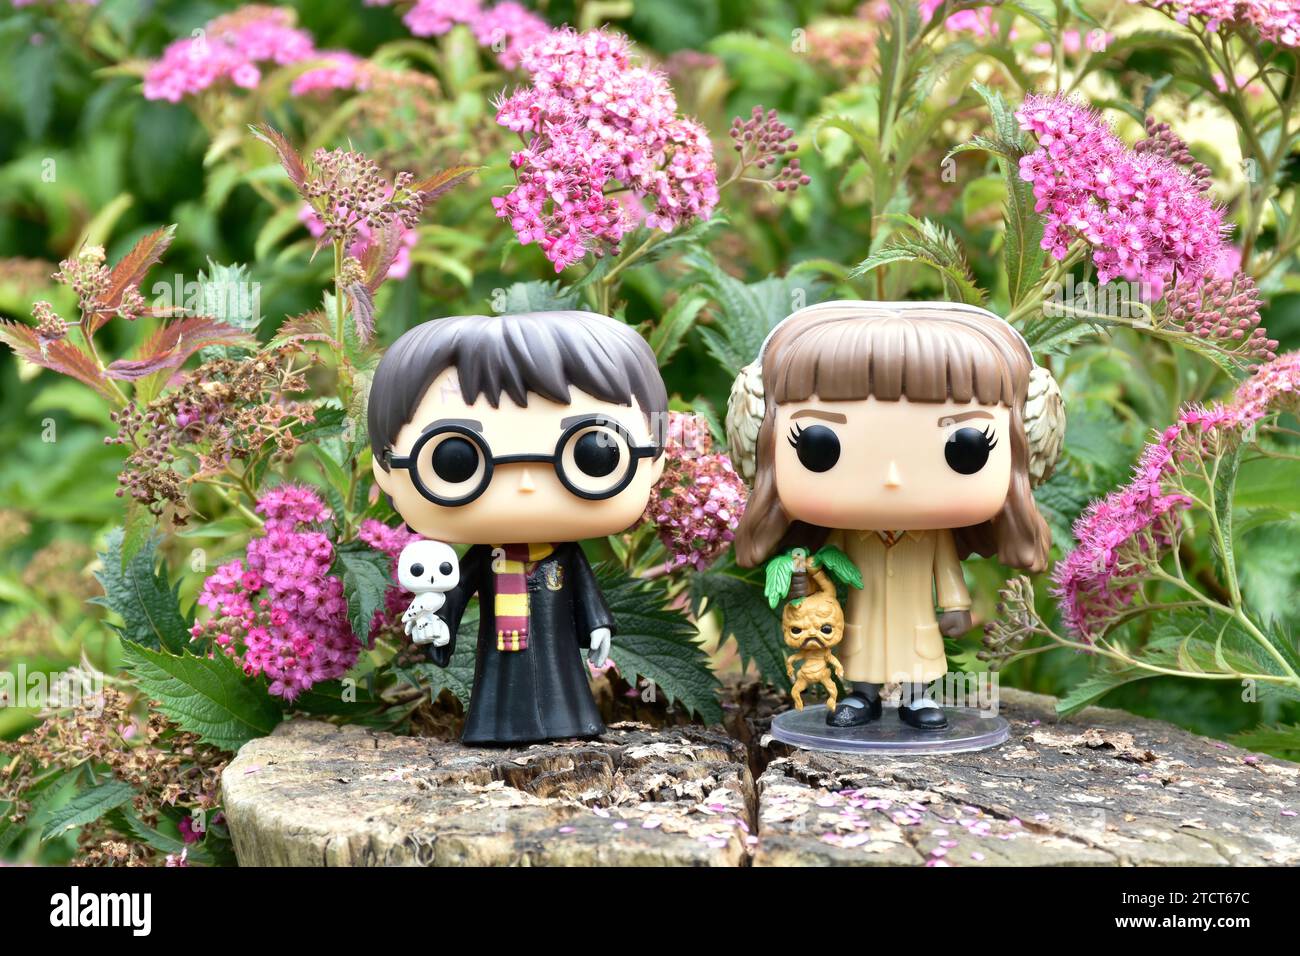 Figurines Funko Pop de Harry Potter et Hermione Granger. Fleurs roses, clairière de forêt, bois magiques, monde sorcier, amitié. Banque D'Images